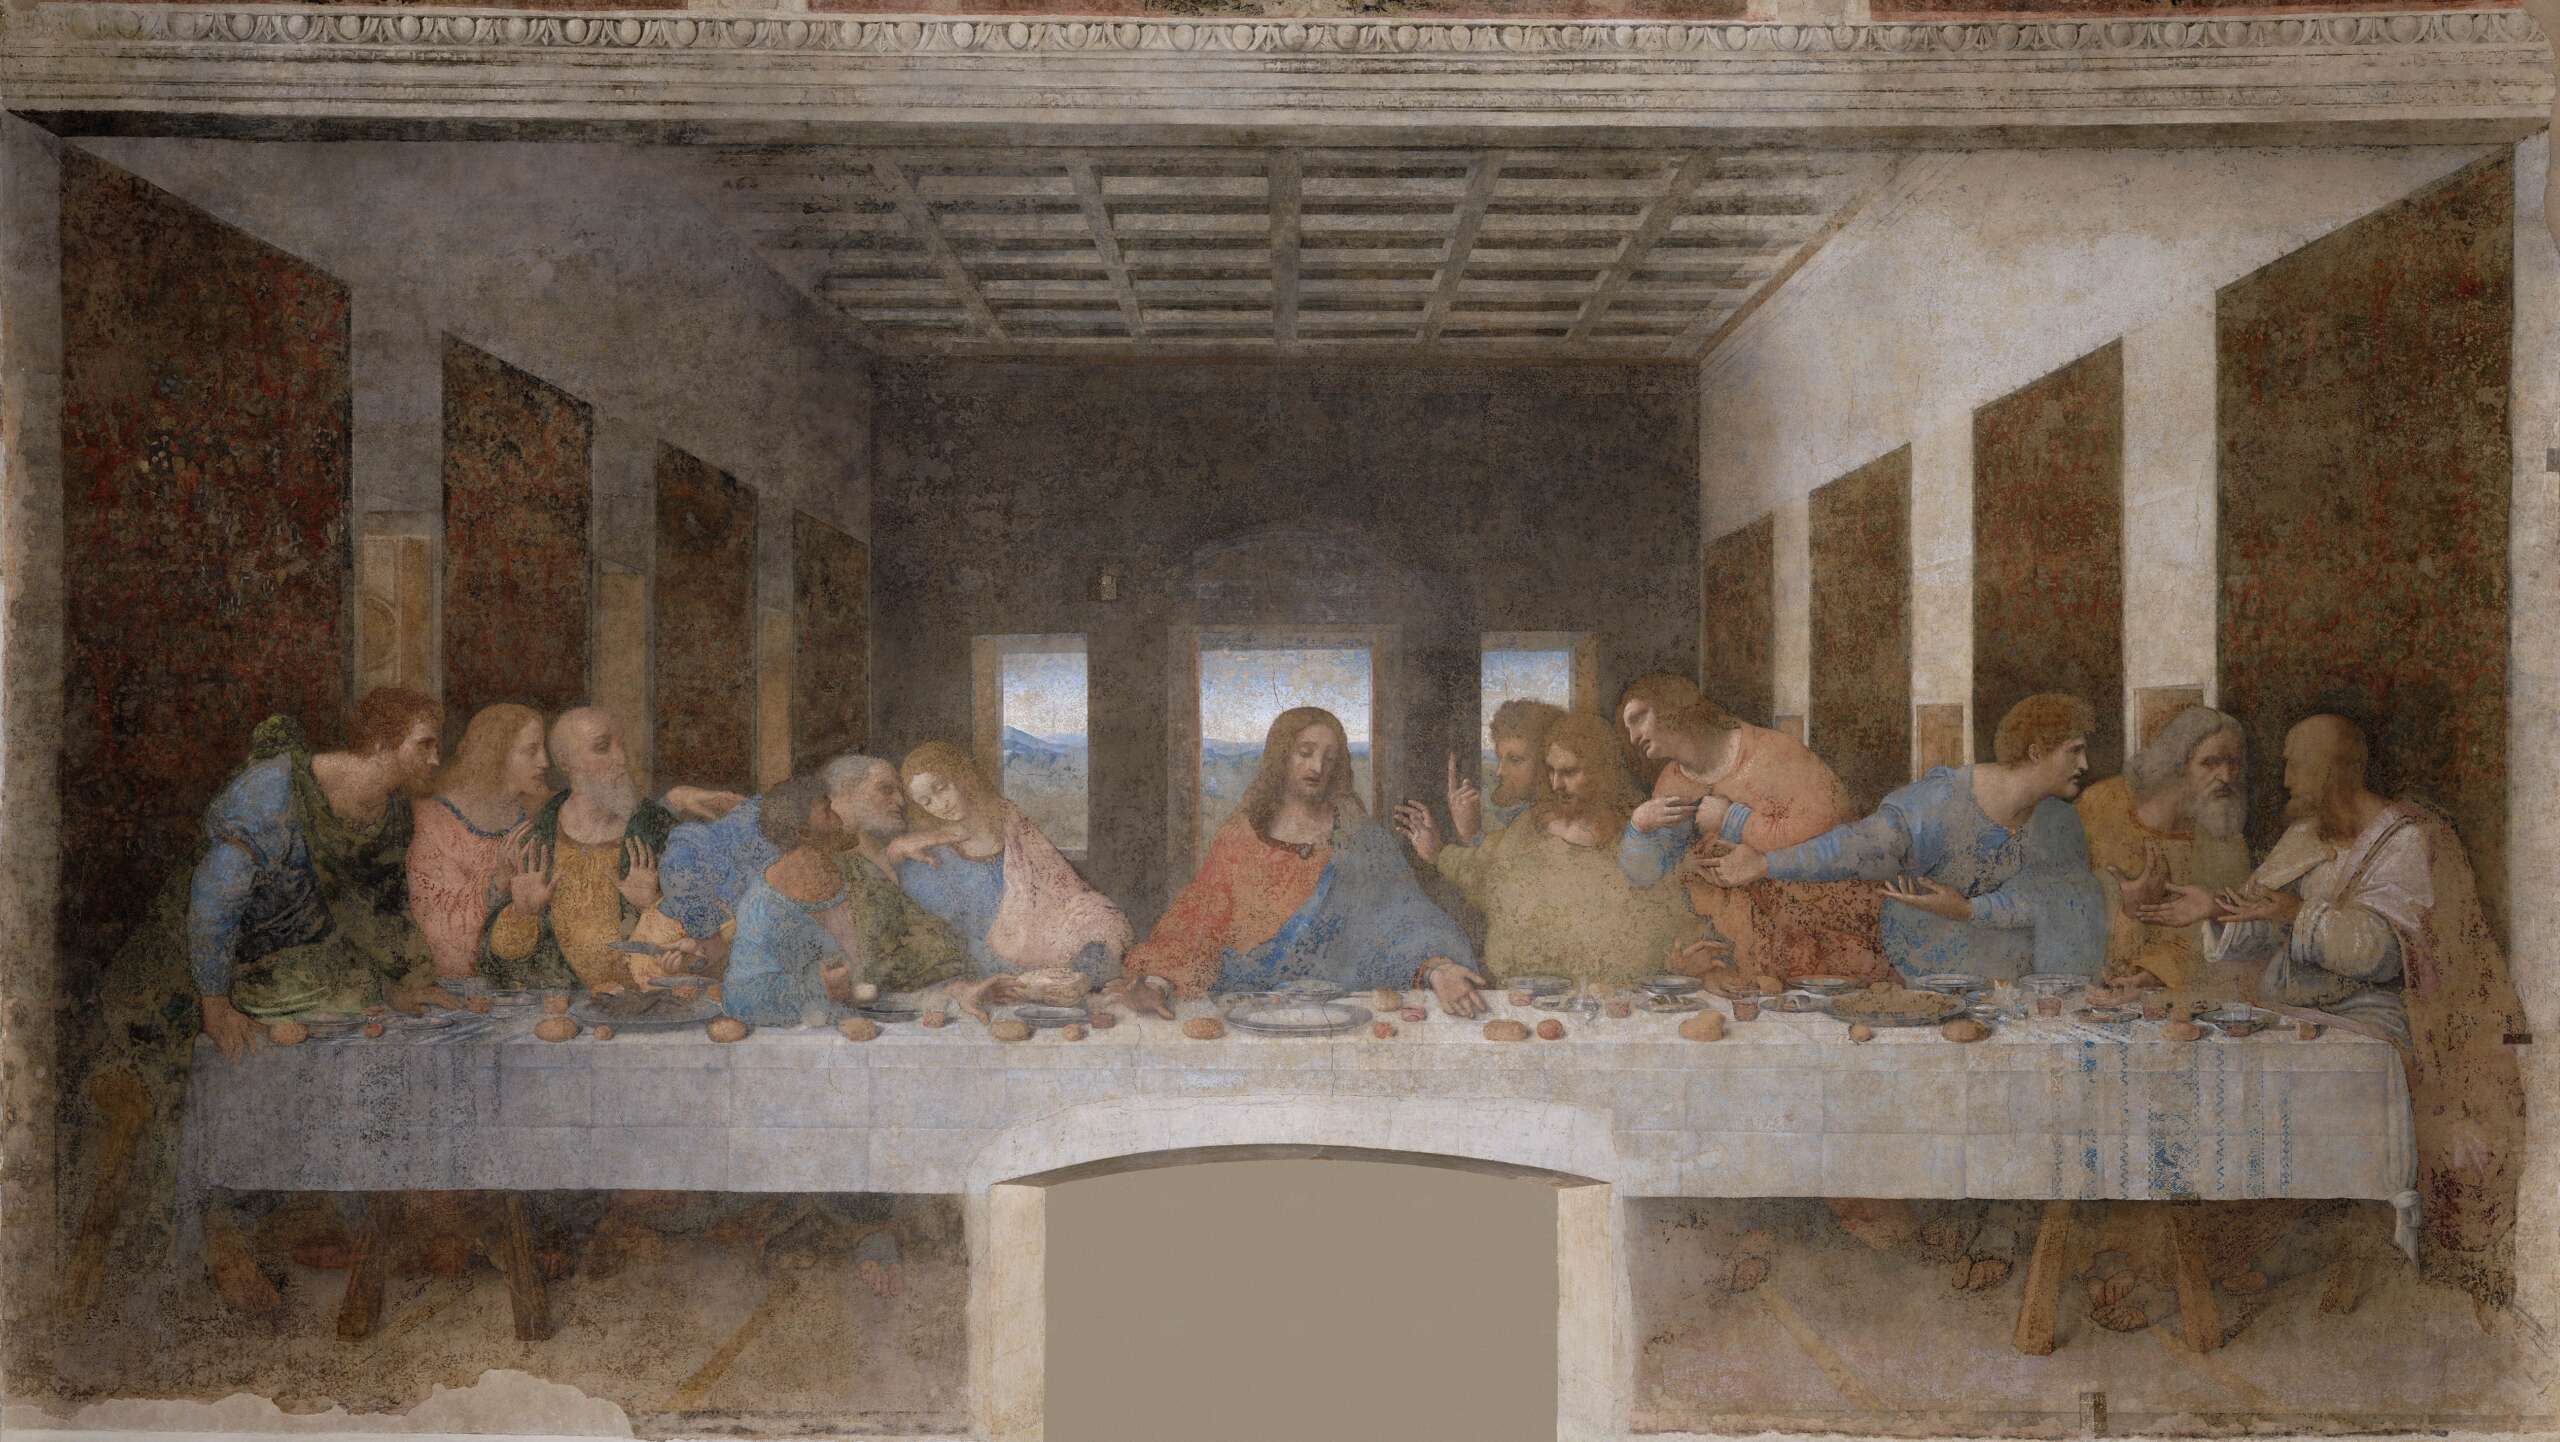 Da Vinci's 'The Last Supper'